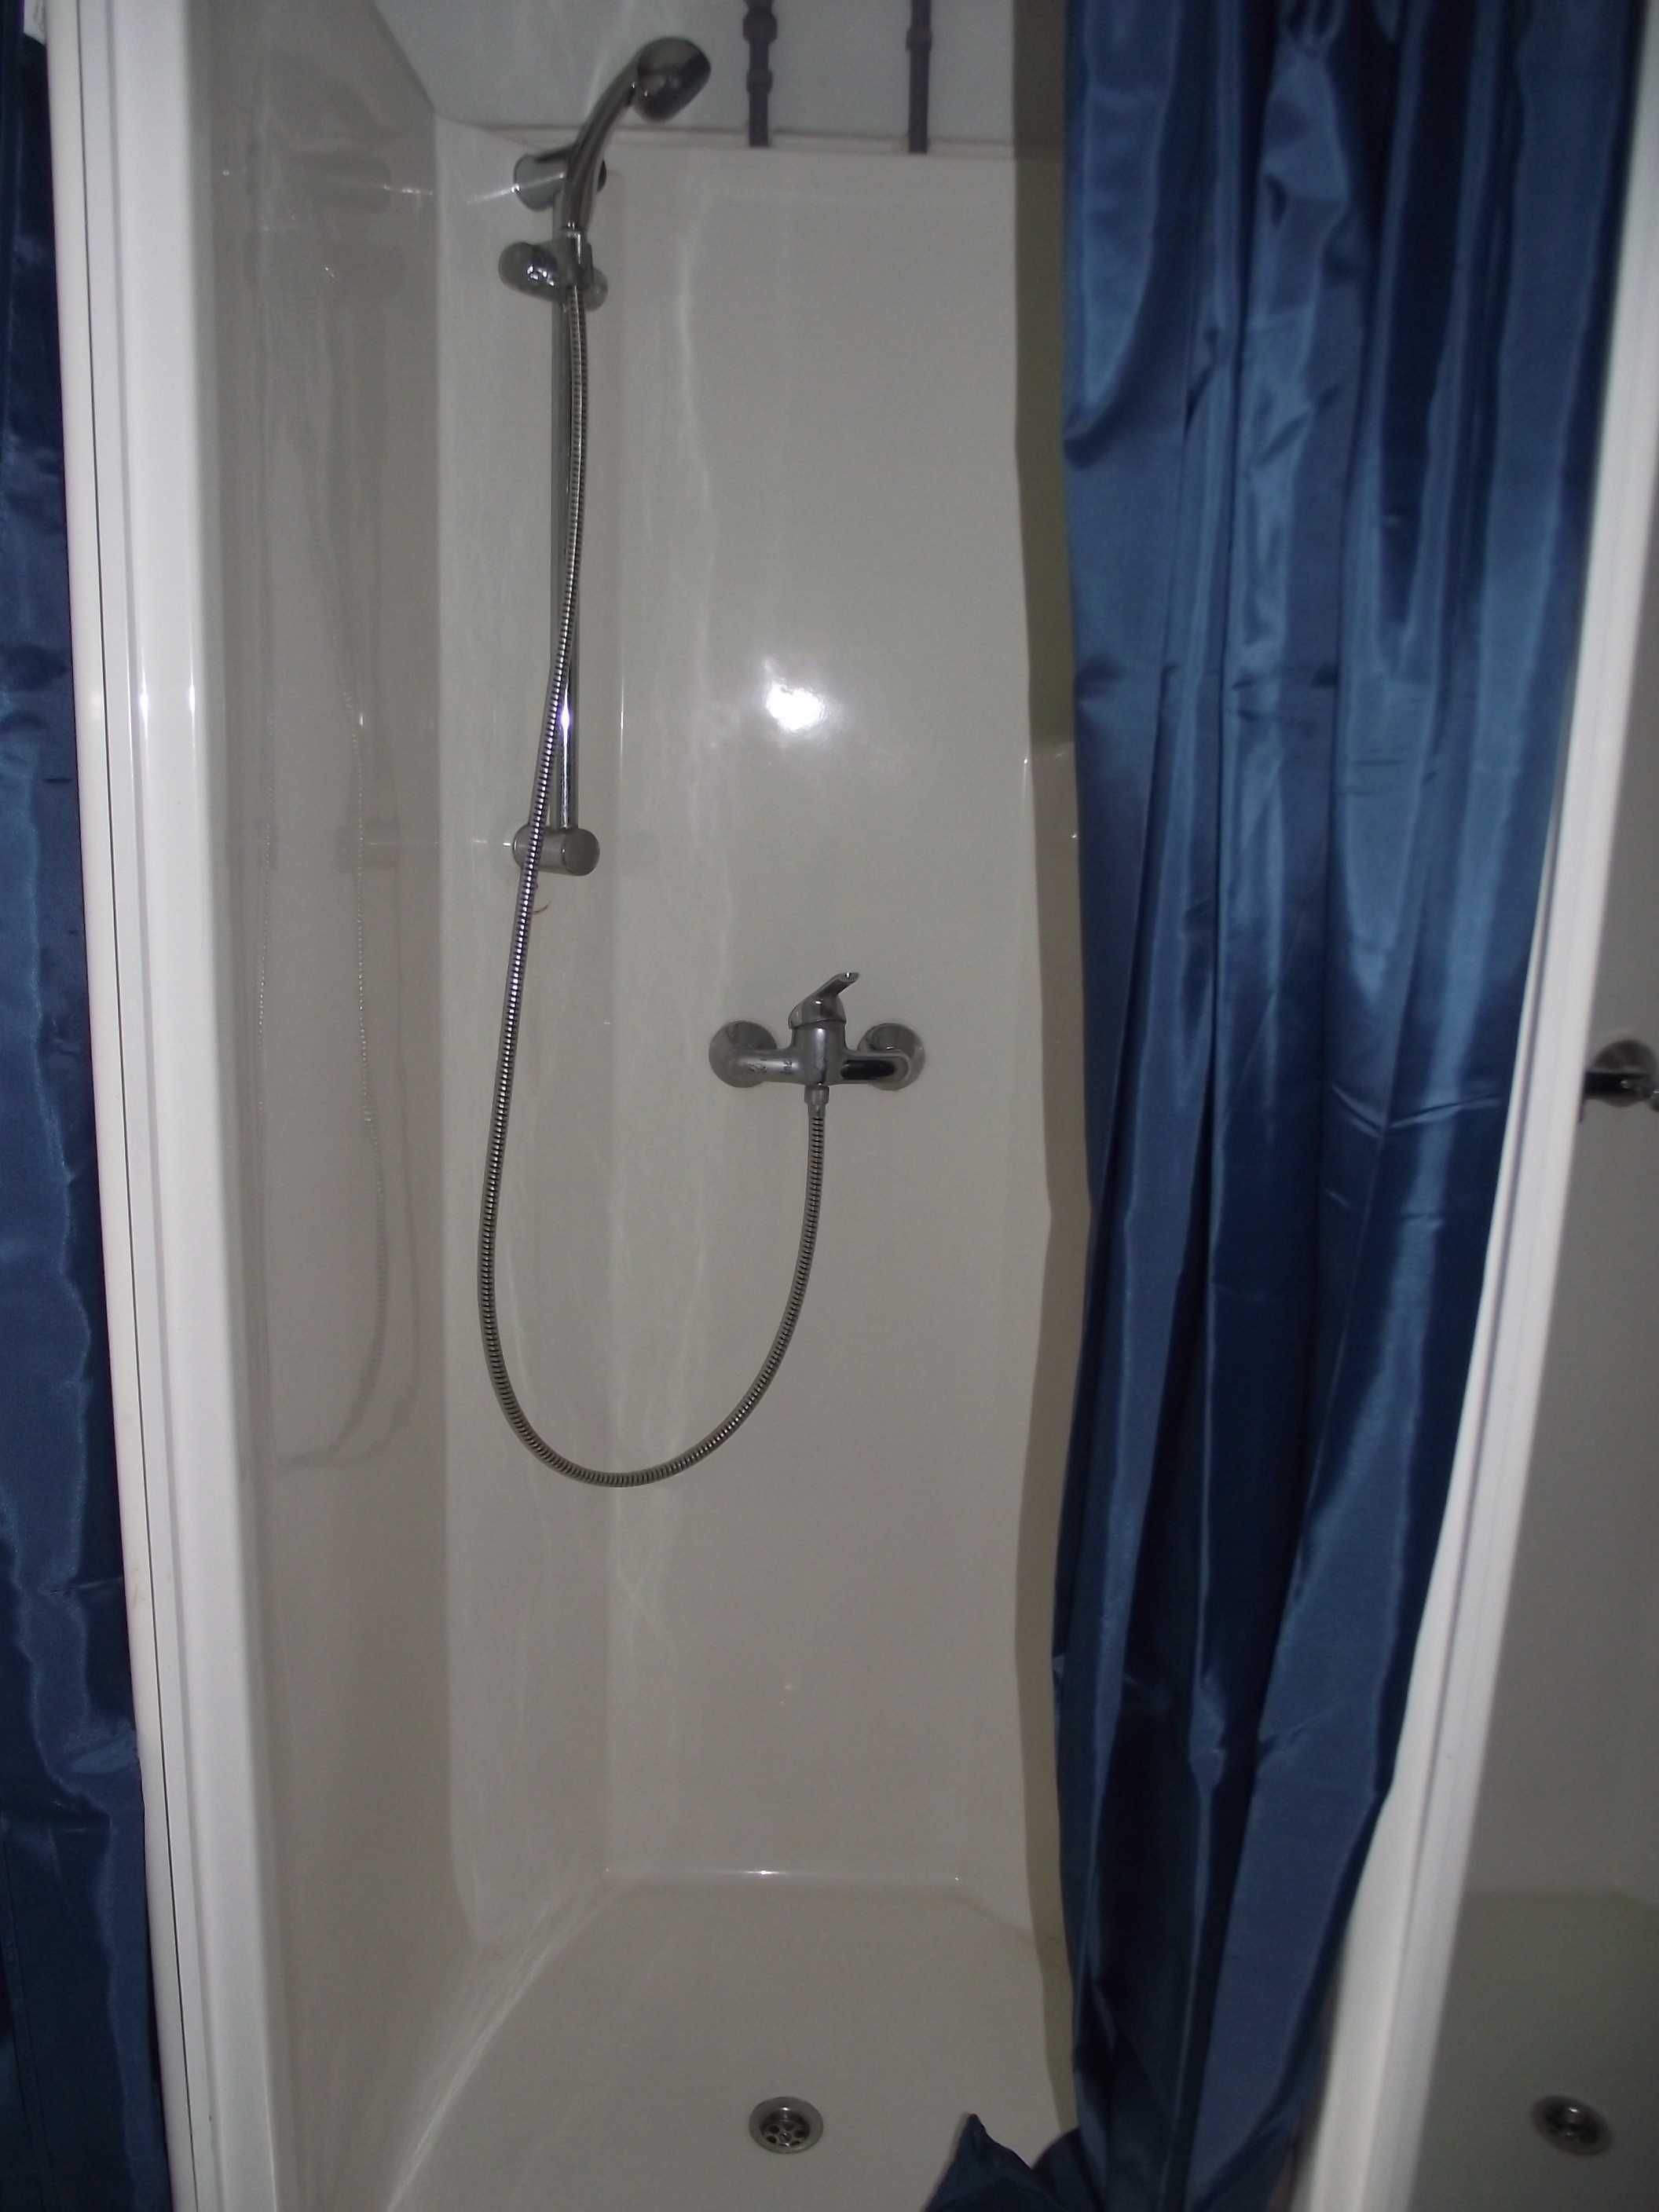 Kontener sanitarny , prysznicowy od ręki. Możliwy zakup z szambem